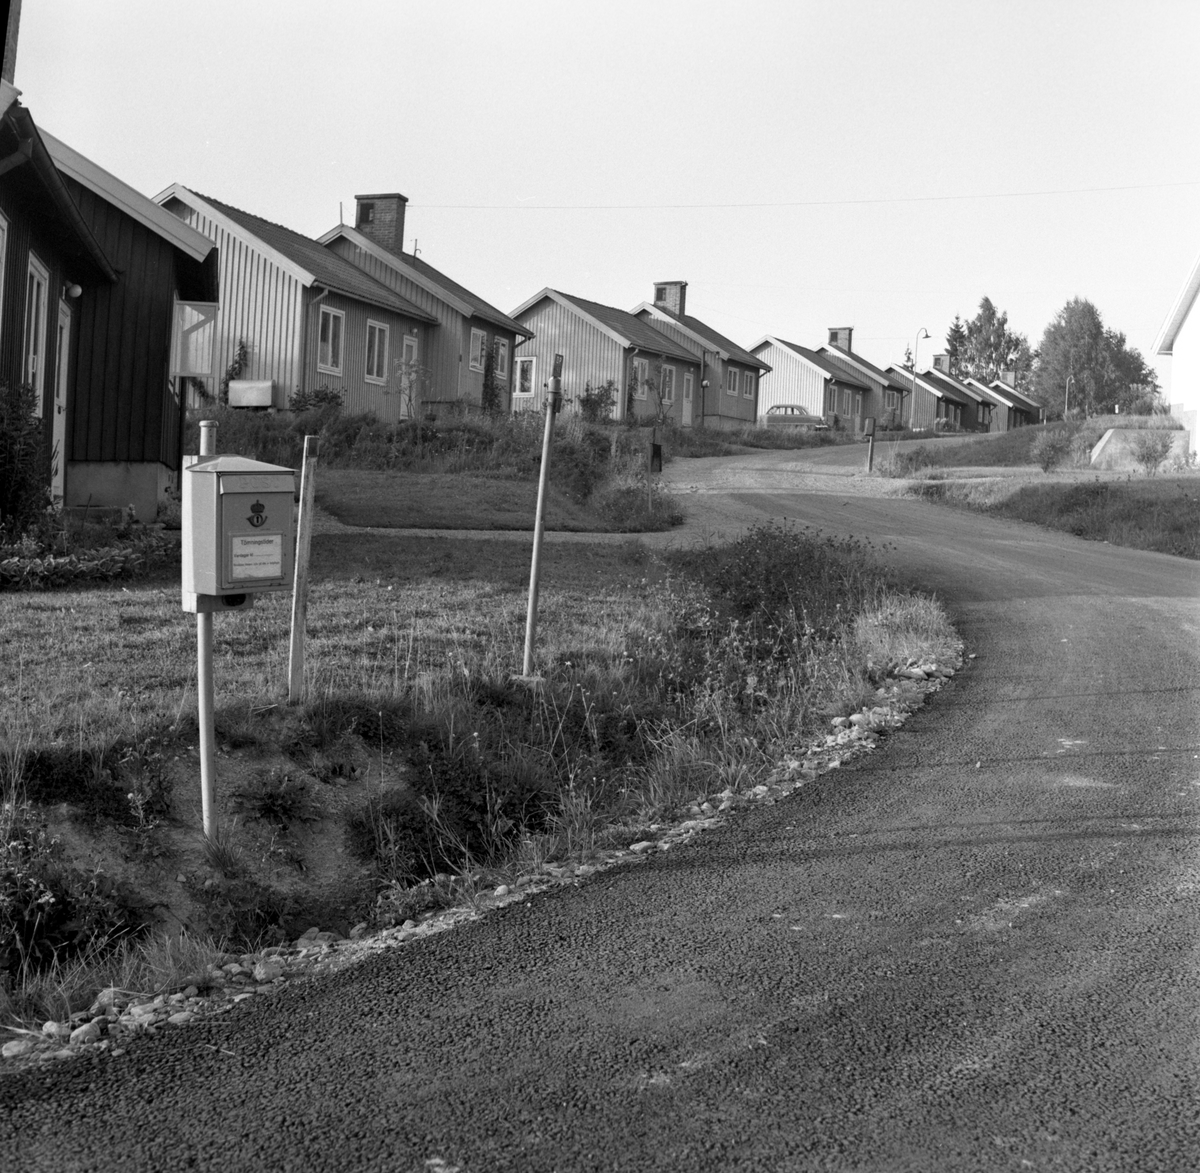 Älvenäs: Bild från augusti 1958.
Ingenjörsvägen Älvenäs